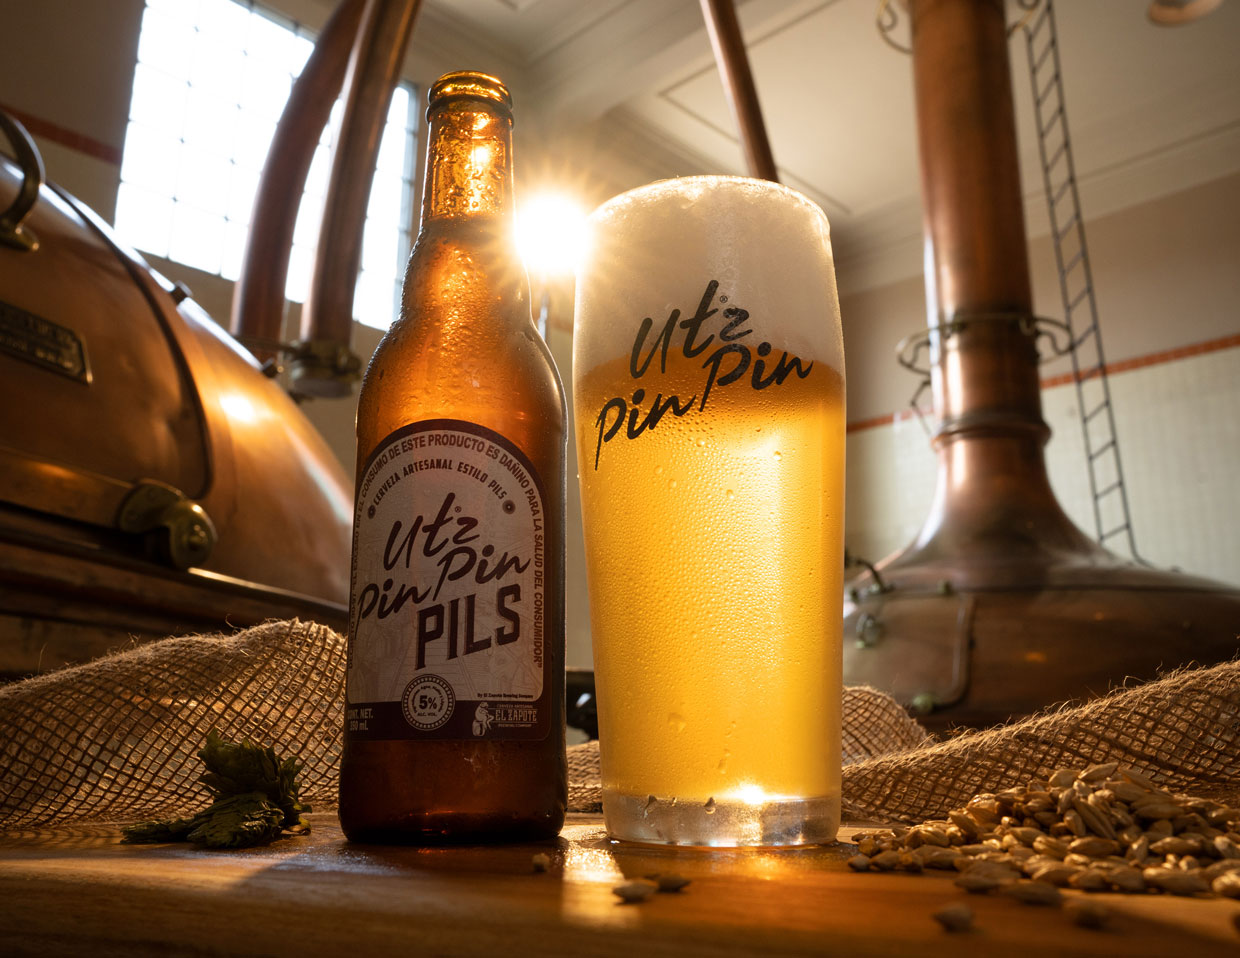 Utz Pin Pin Pils, la nueva cerveza artesanal de El Zapote Brewing Company